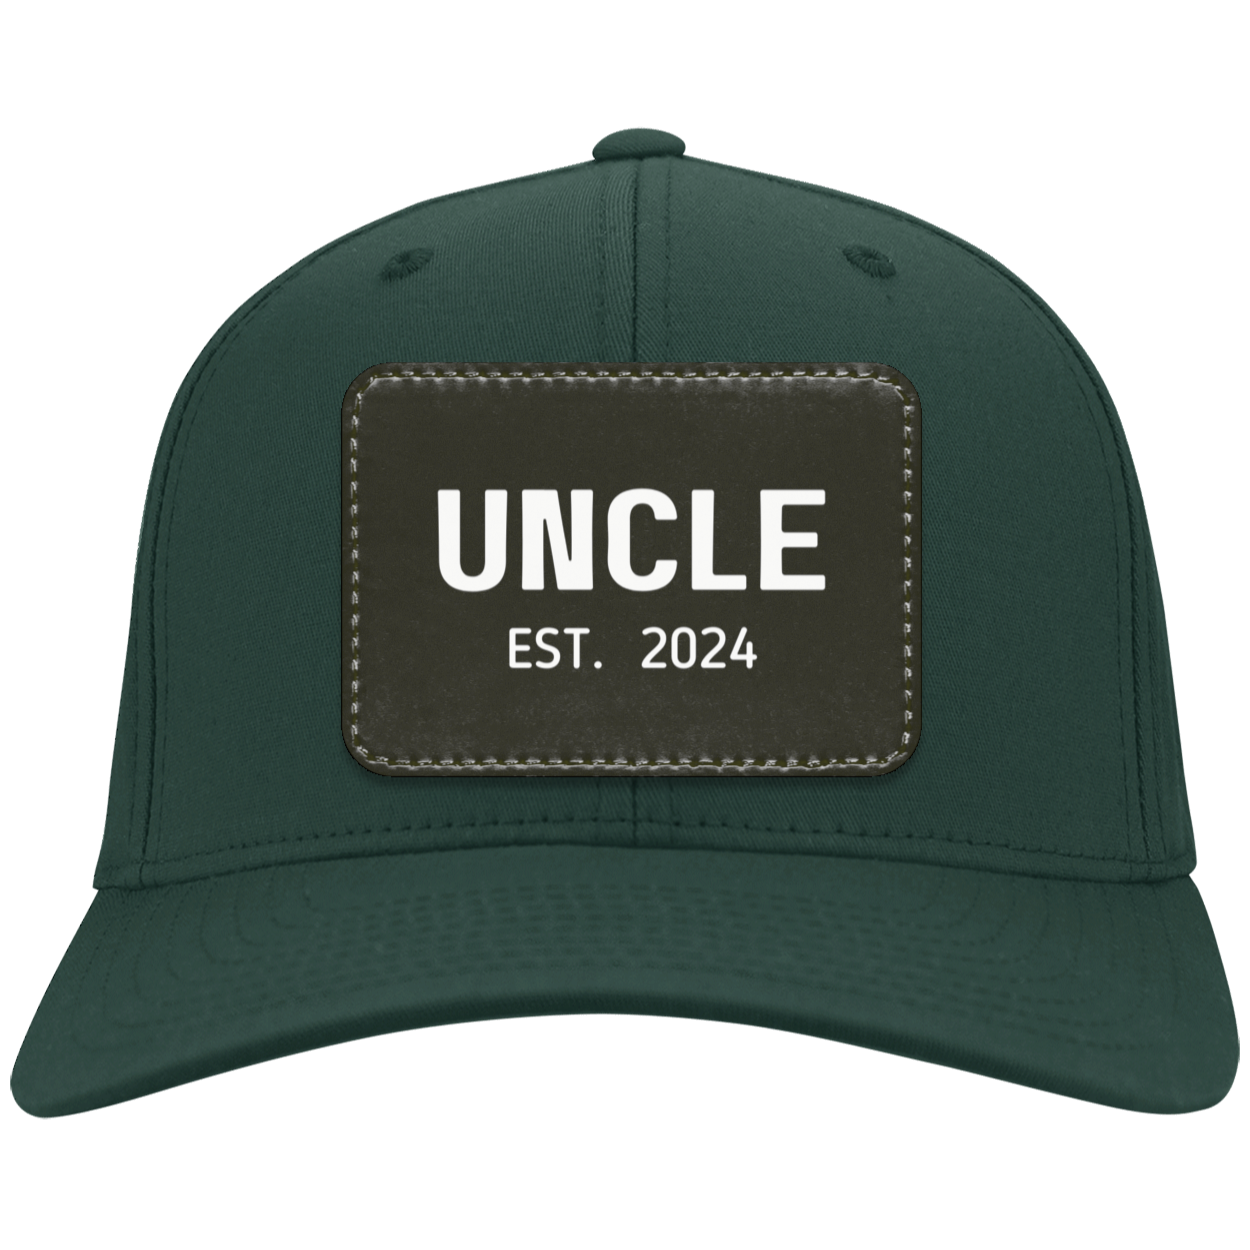 Uncle (Est. 2024) Twill Cap